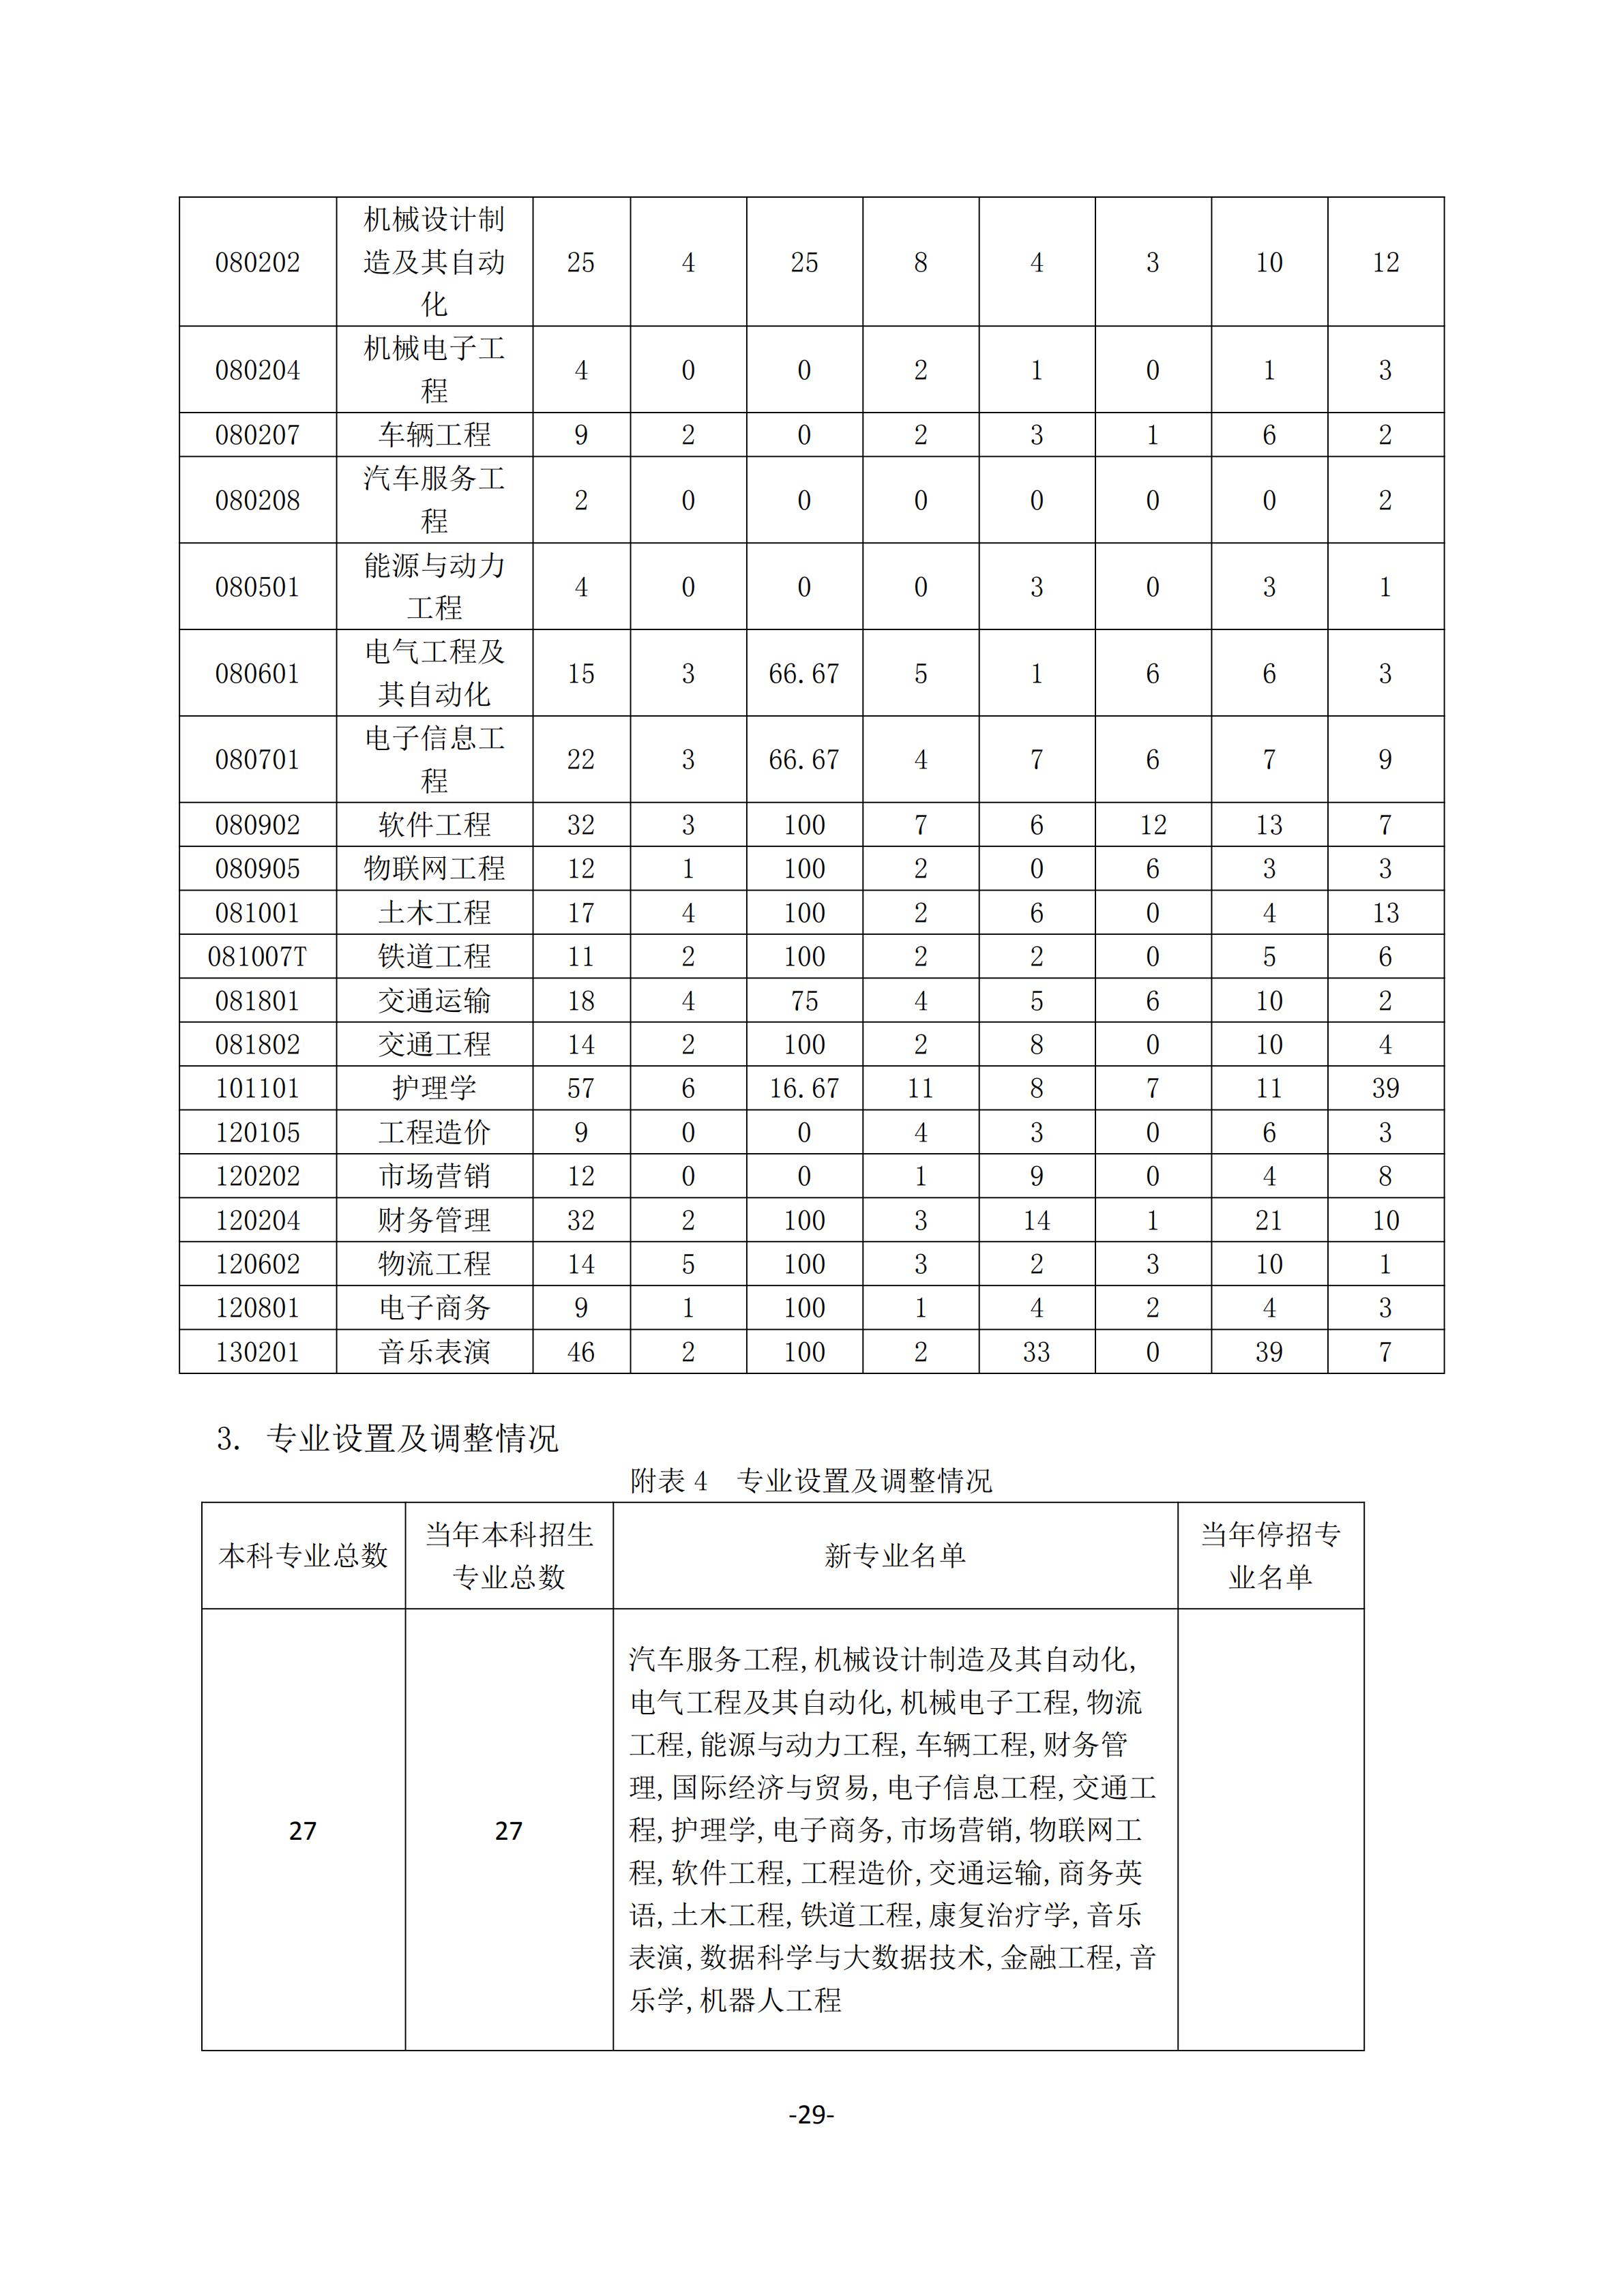 1.湖南交通工程学院2018-2019学年本科教学质量报告_28.jpg